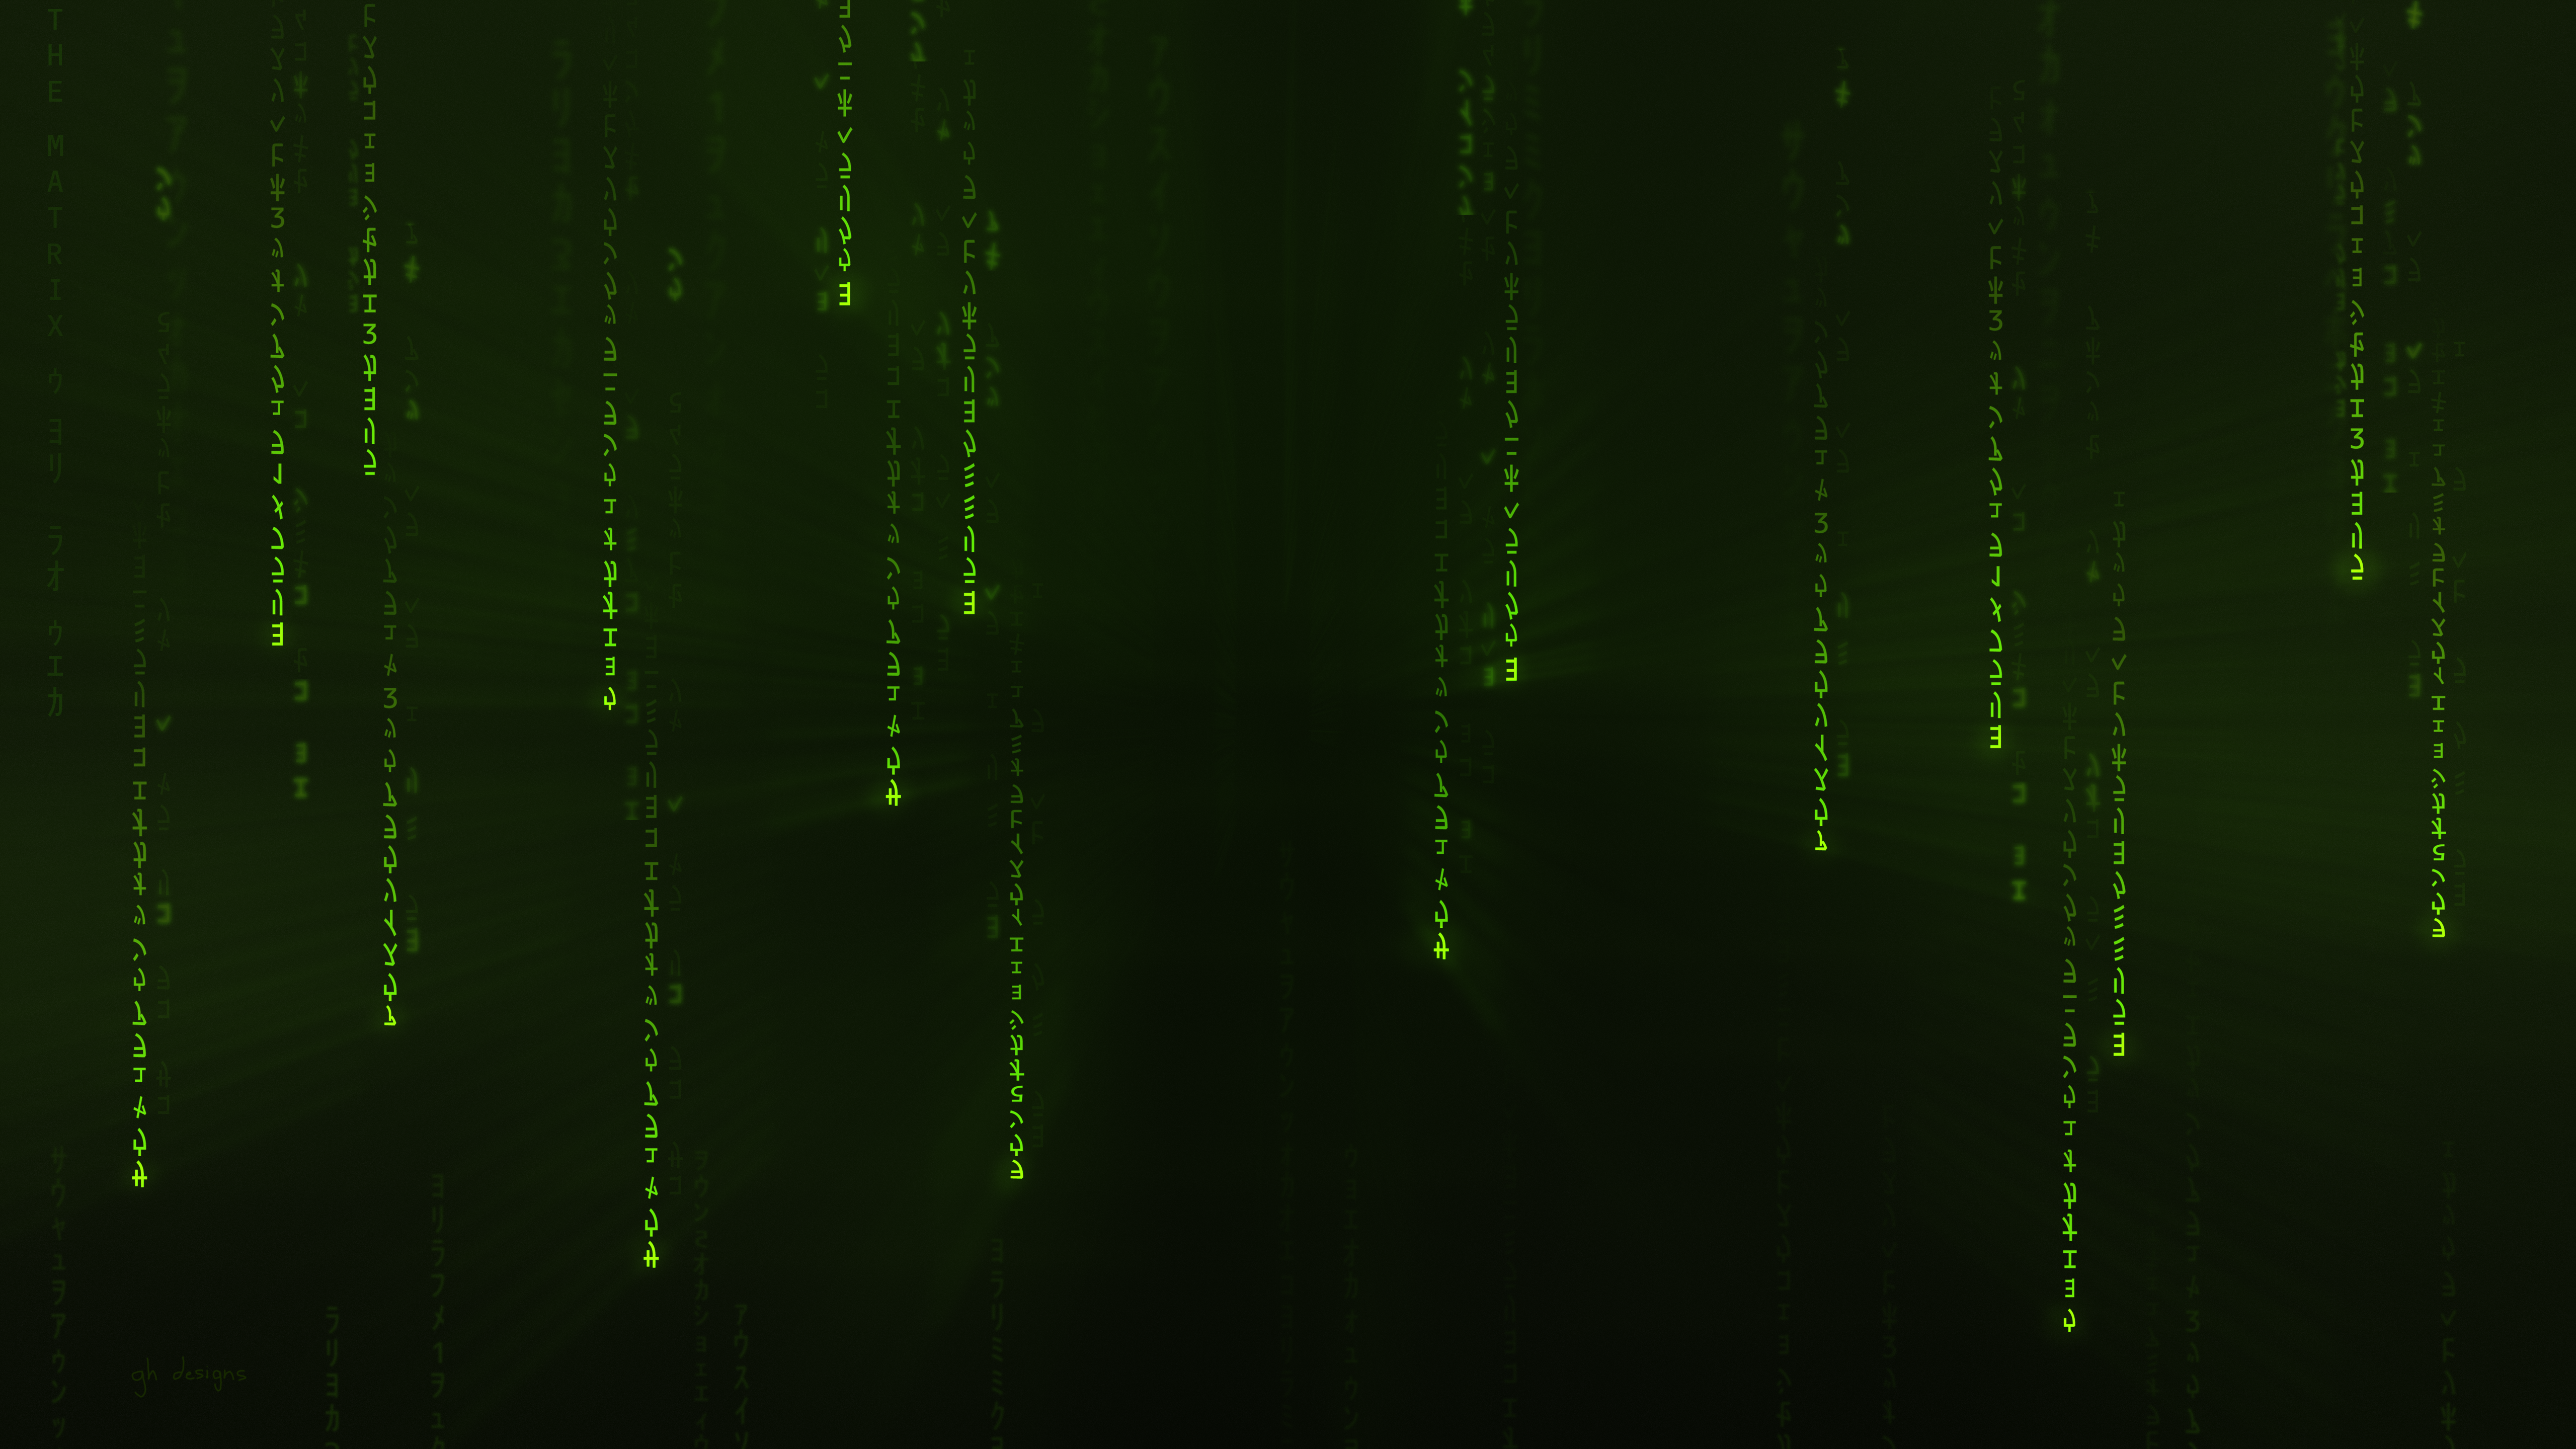 General 5120x2880 green minimalism Starkiteckt Matrix code The Matrix digital